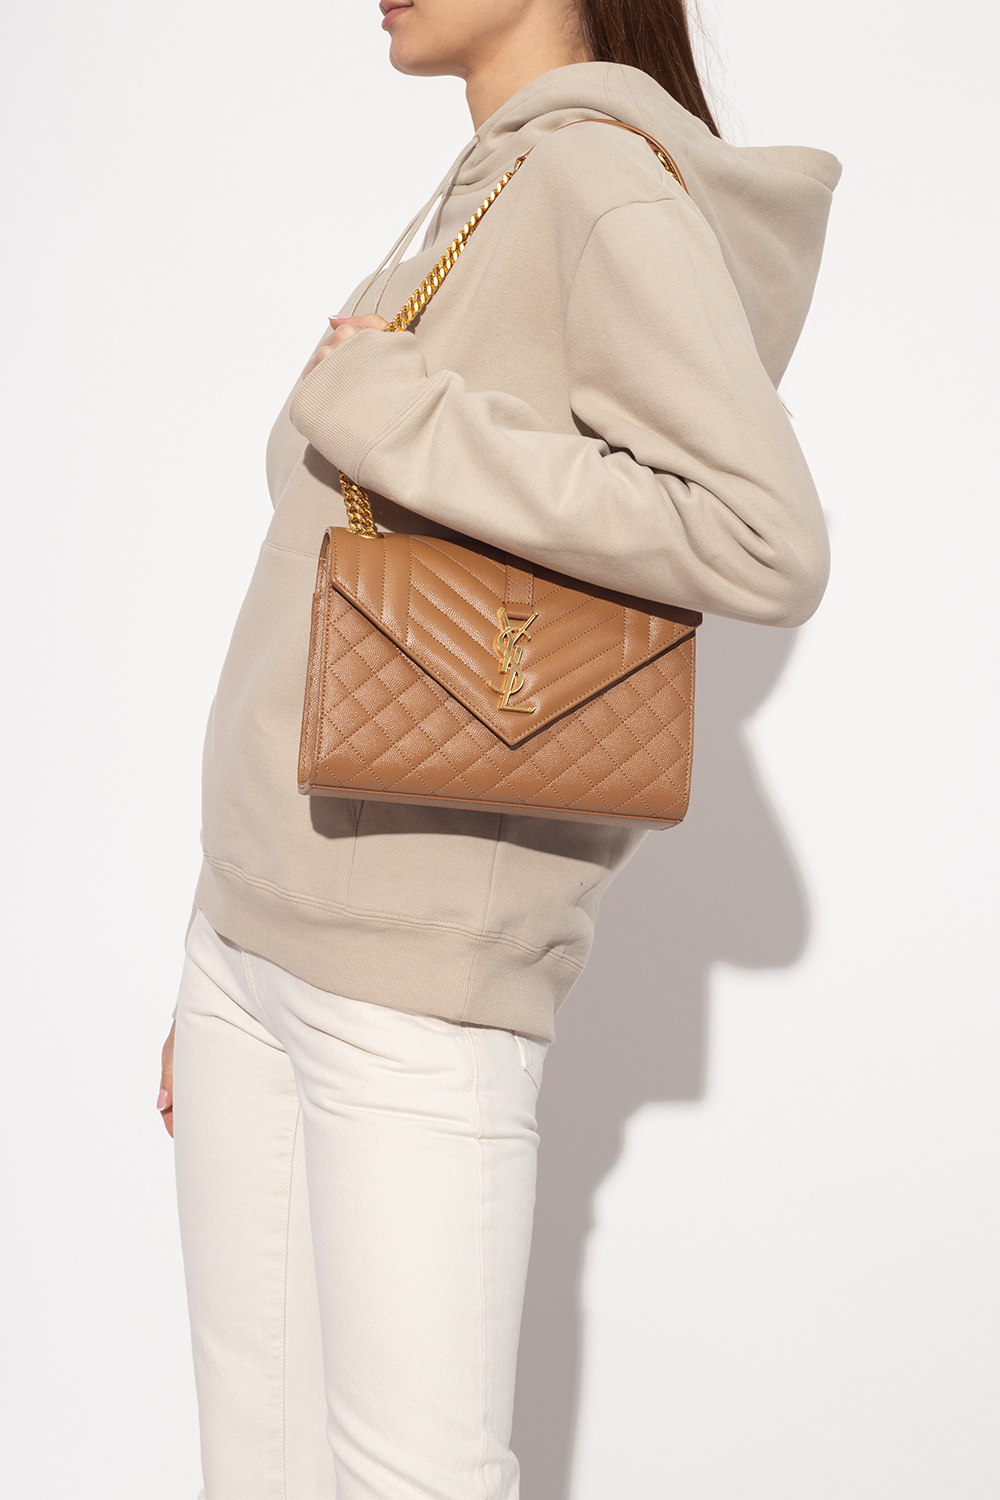 Brown 'Envelope Medium' shoulder bag Saint Laurent - Vitkac HK